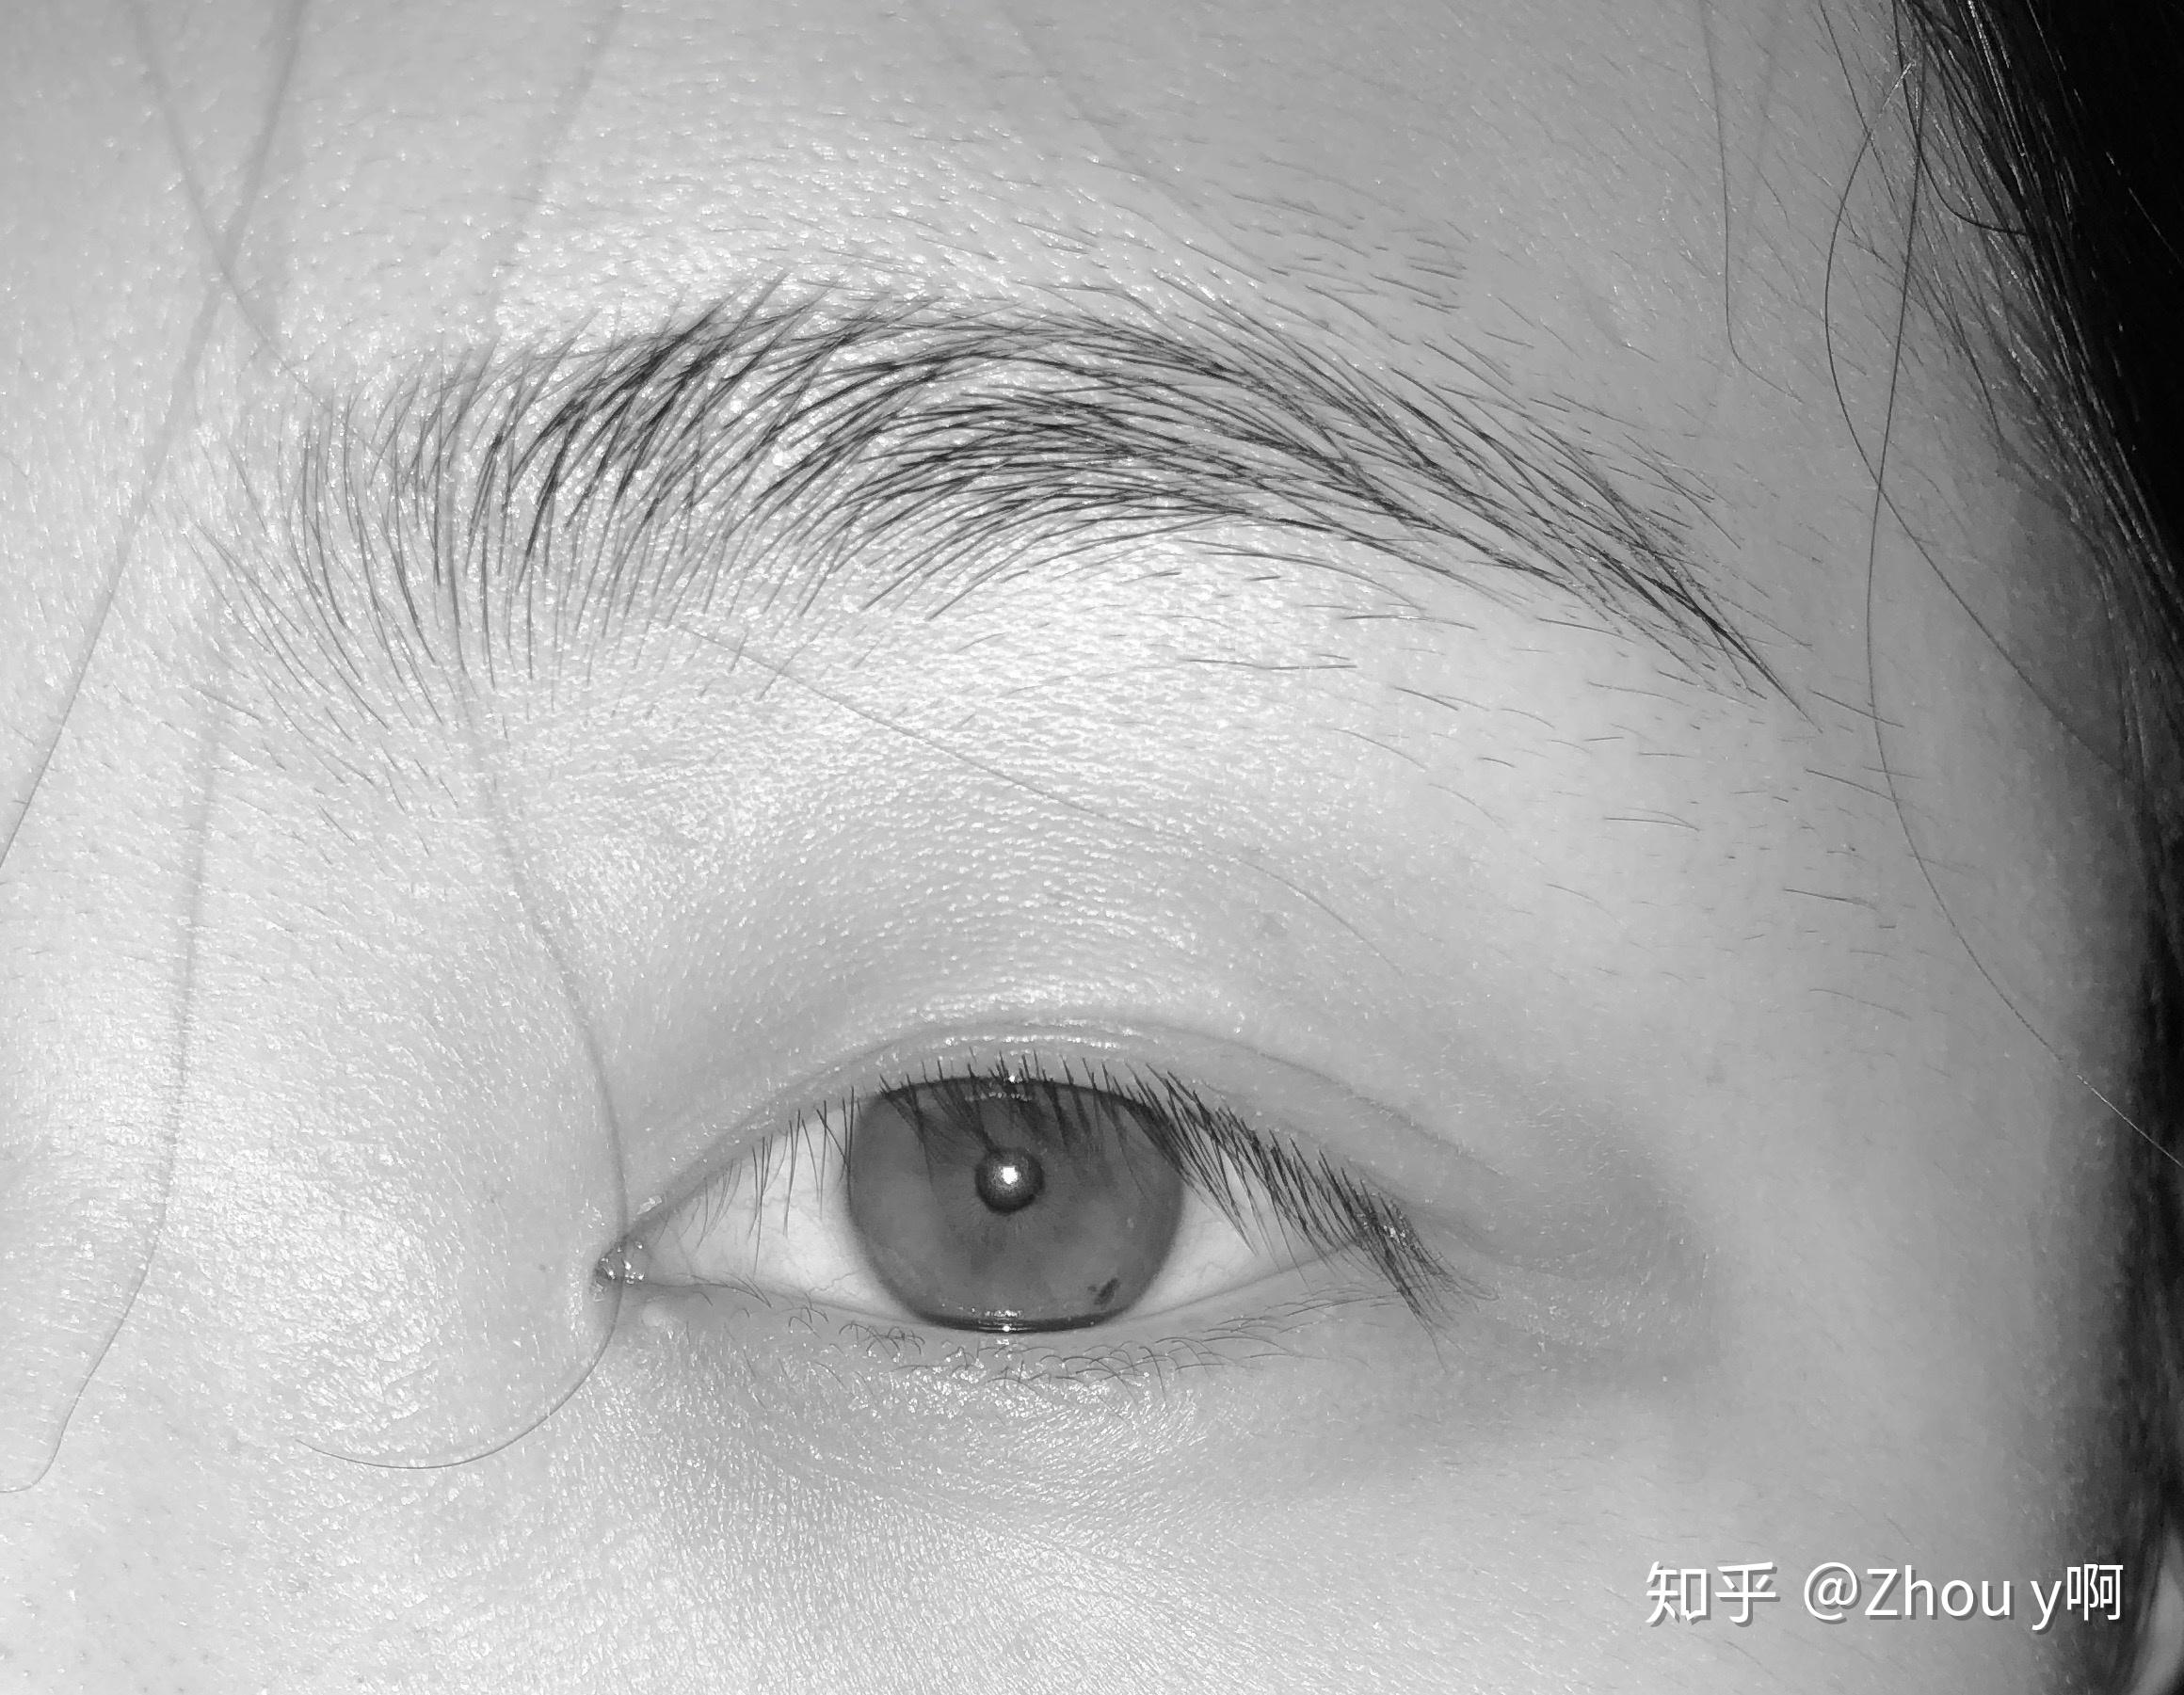 同是汉族人为什么a的眼睛是浅棕色b的眼睛是浅灰色c的眼睛是黑棕色